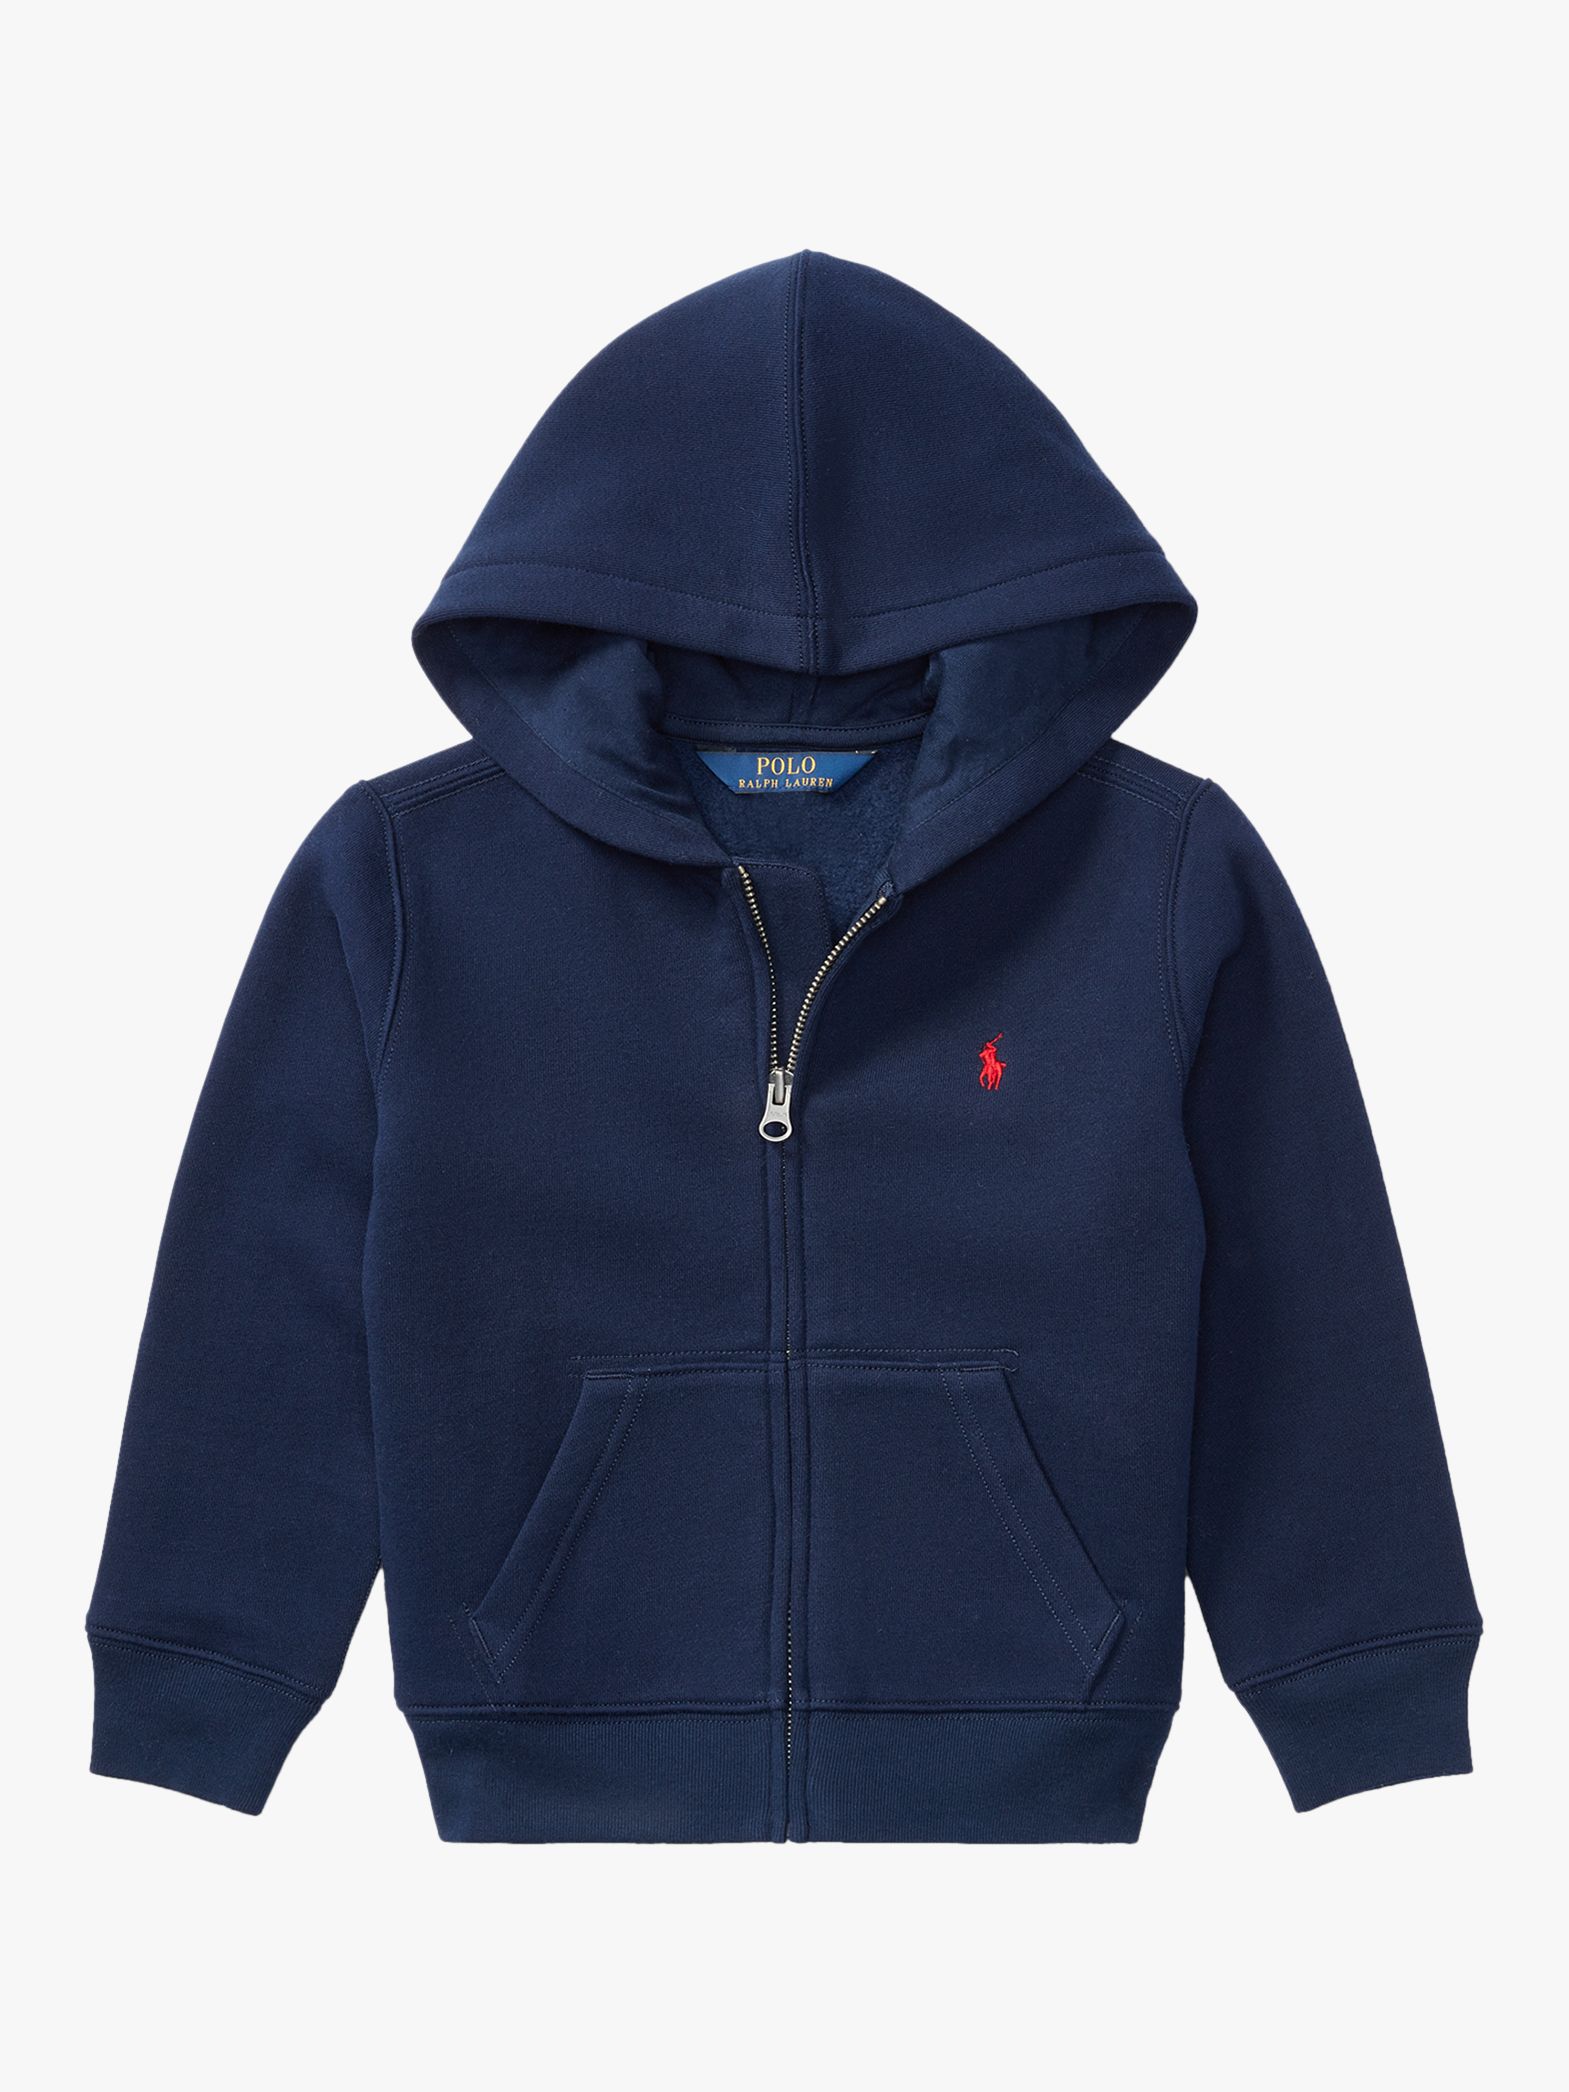 Polo Ralph Lauren Boys' Hooded Sweatshirt